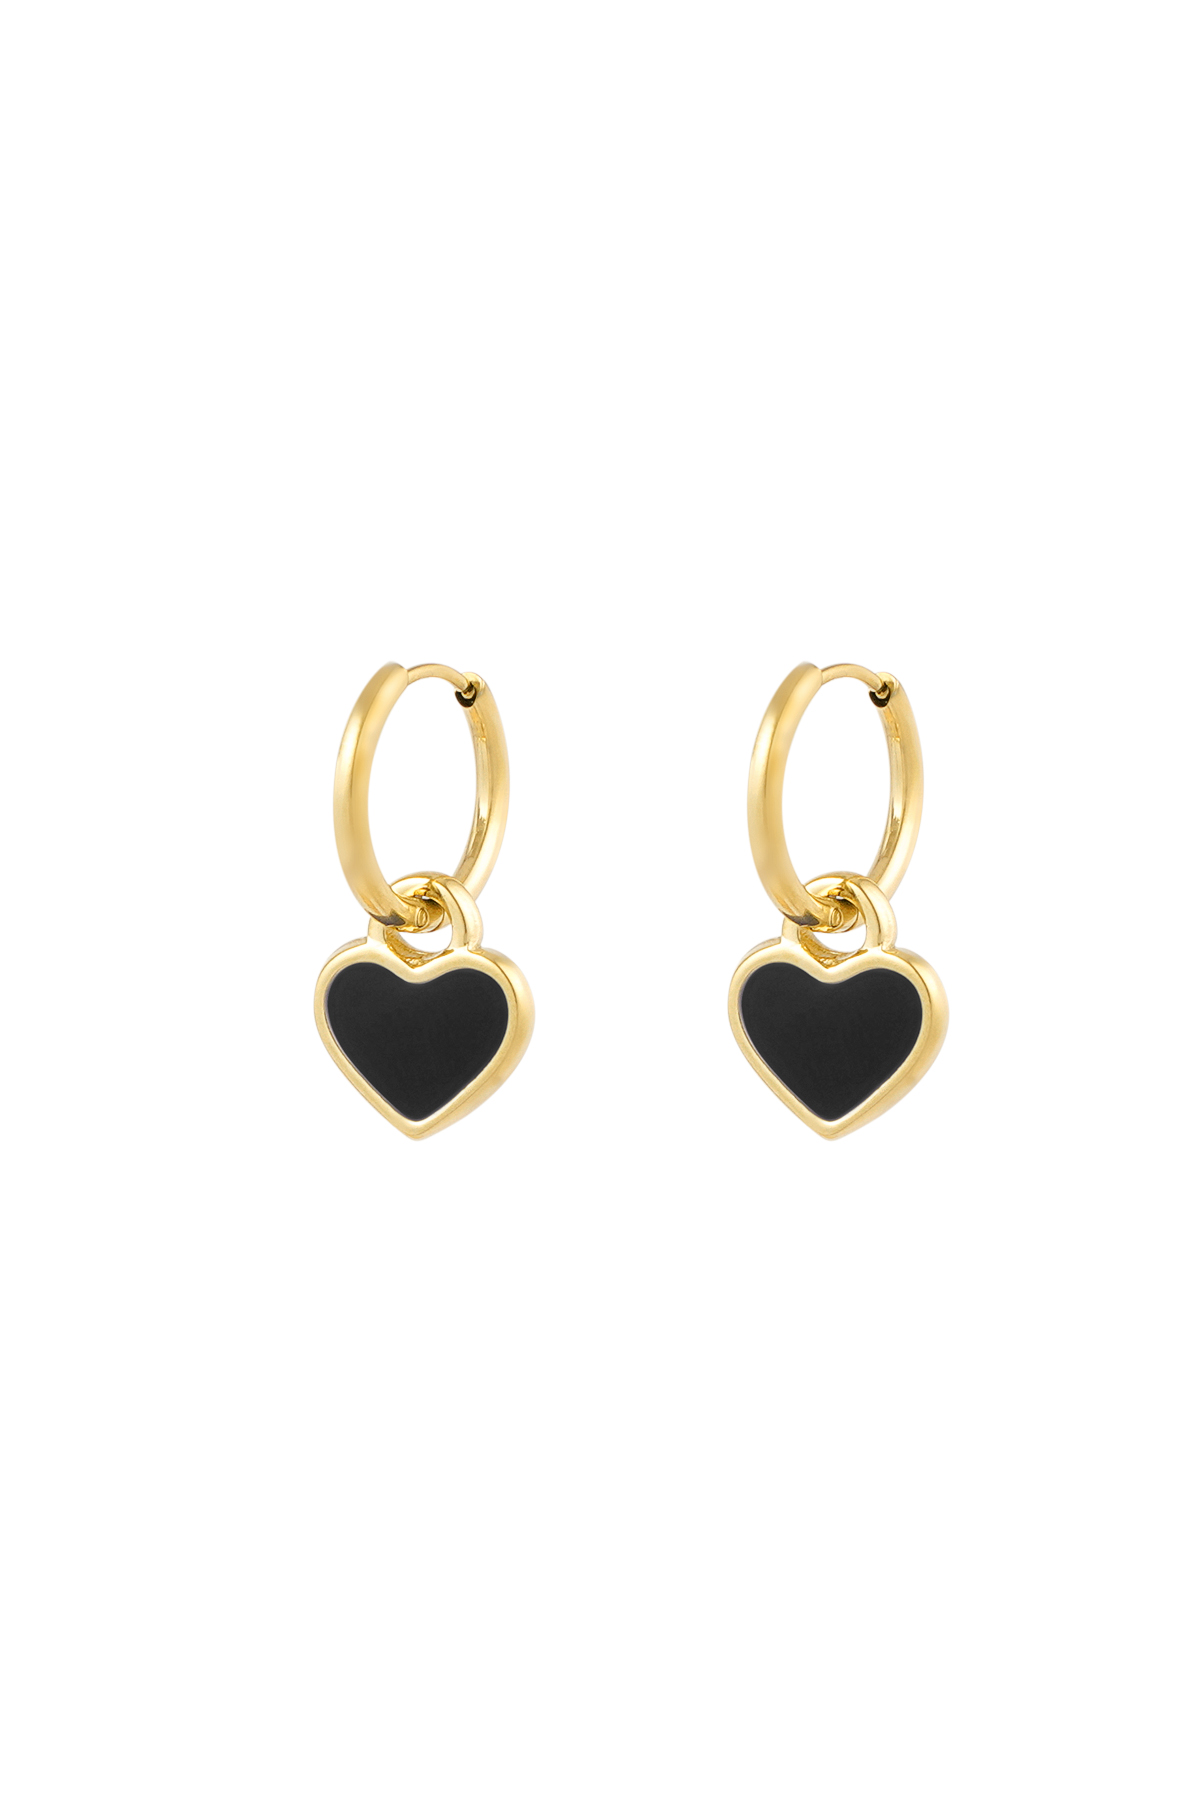 Earrings lover of life - black gold